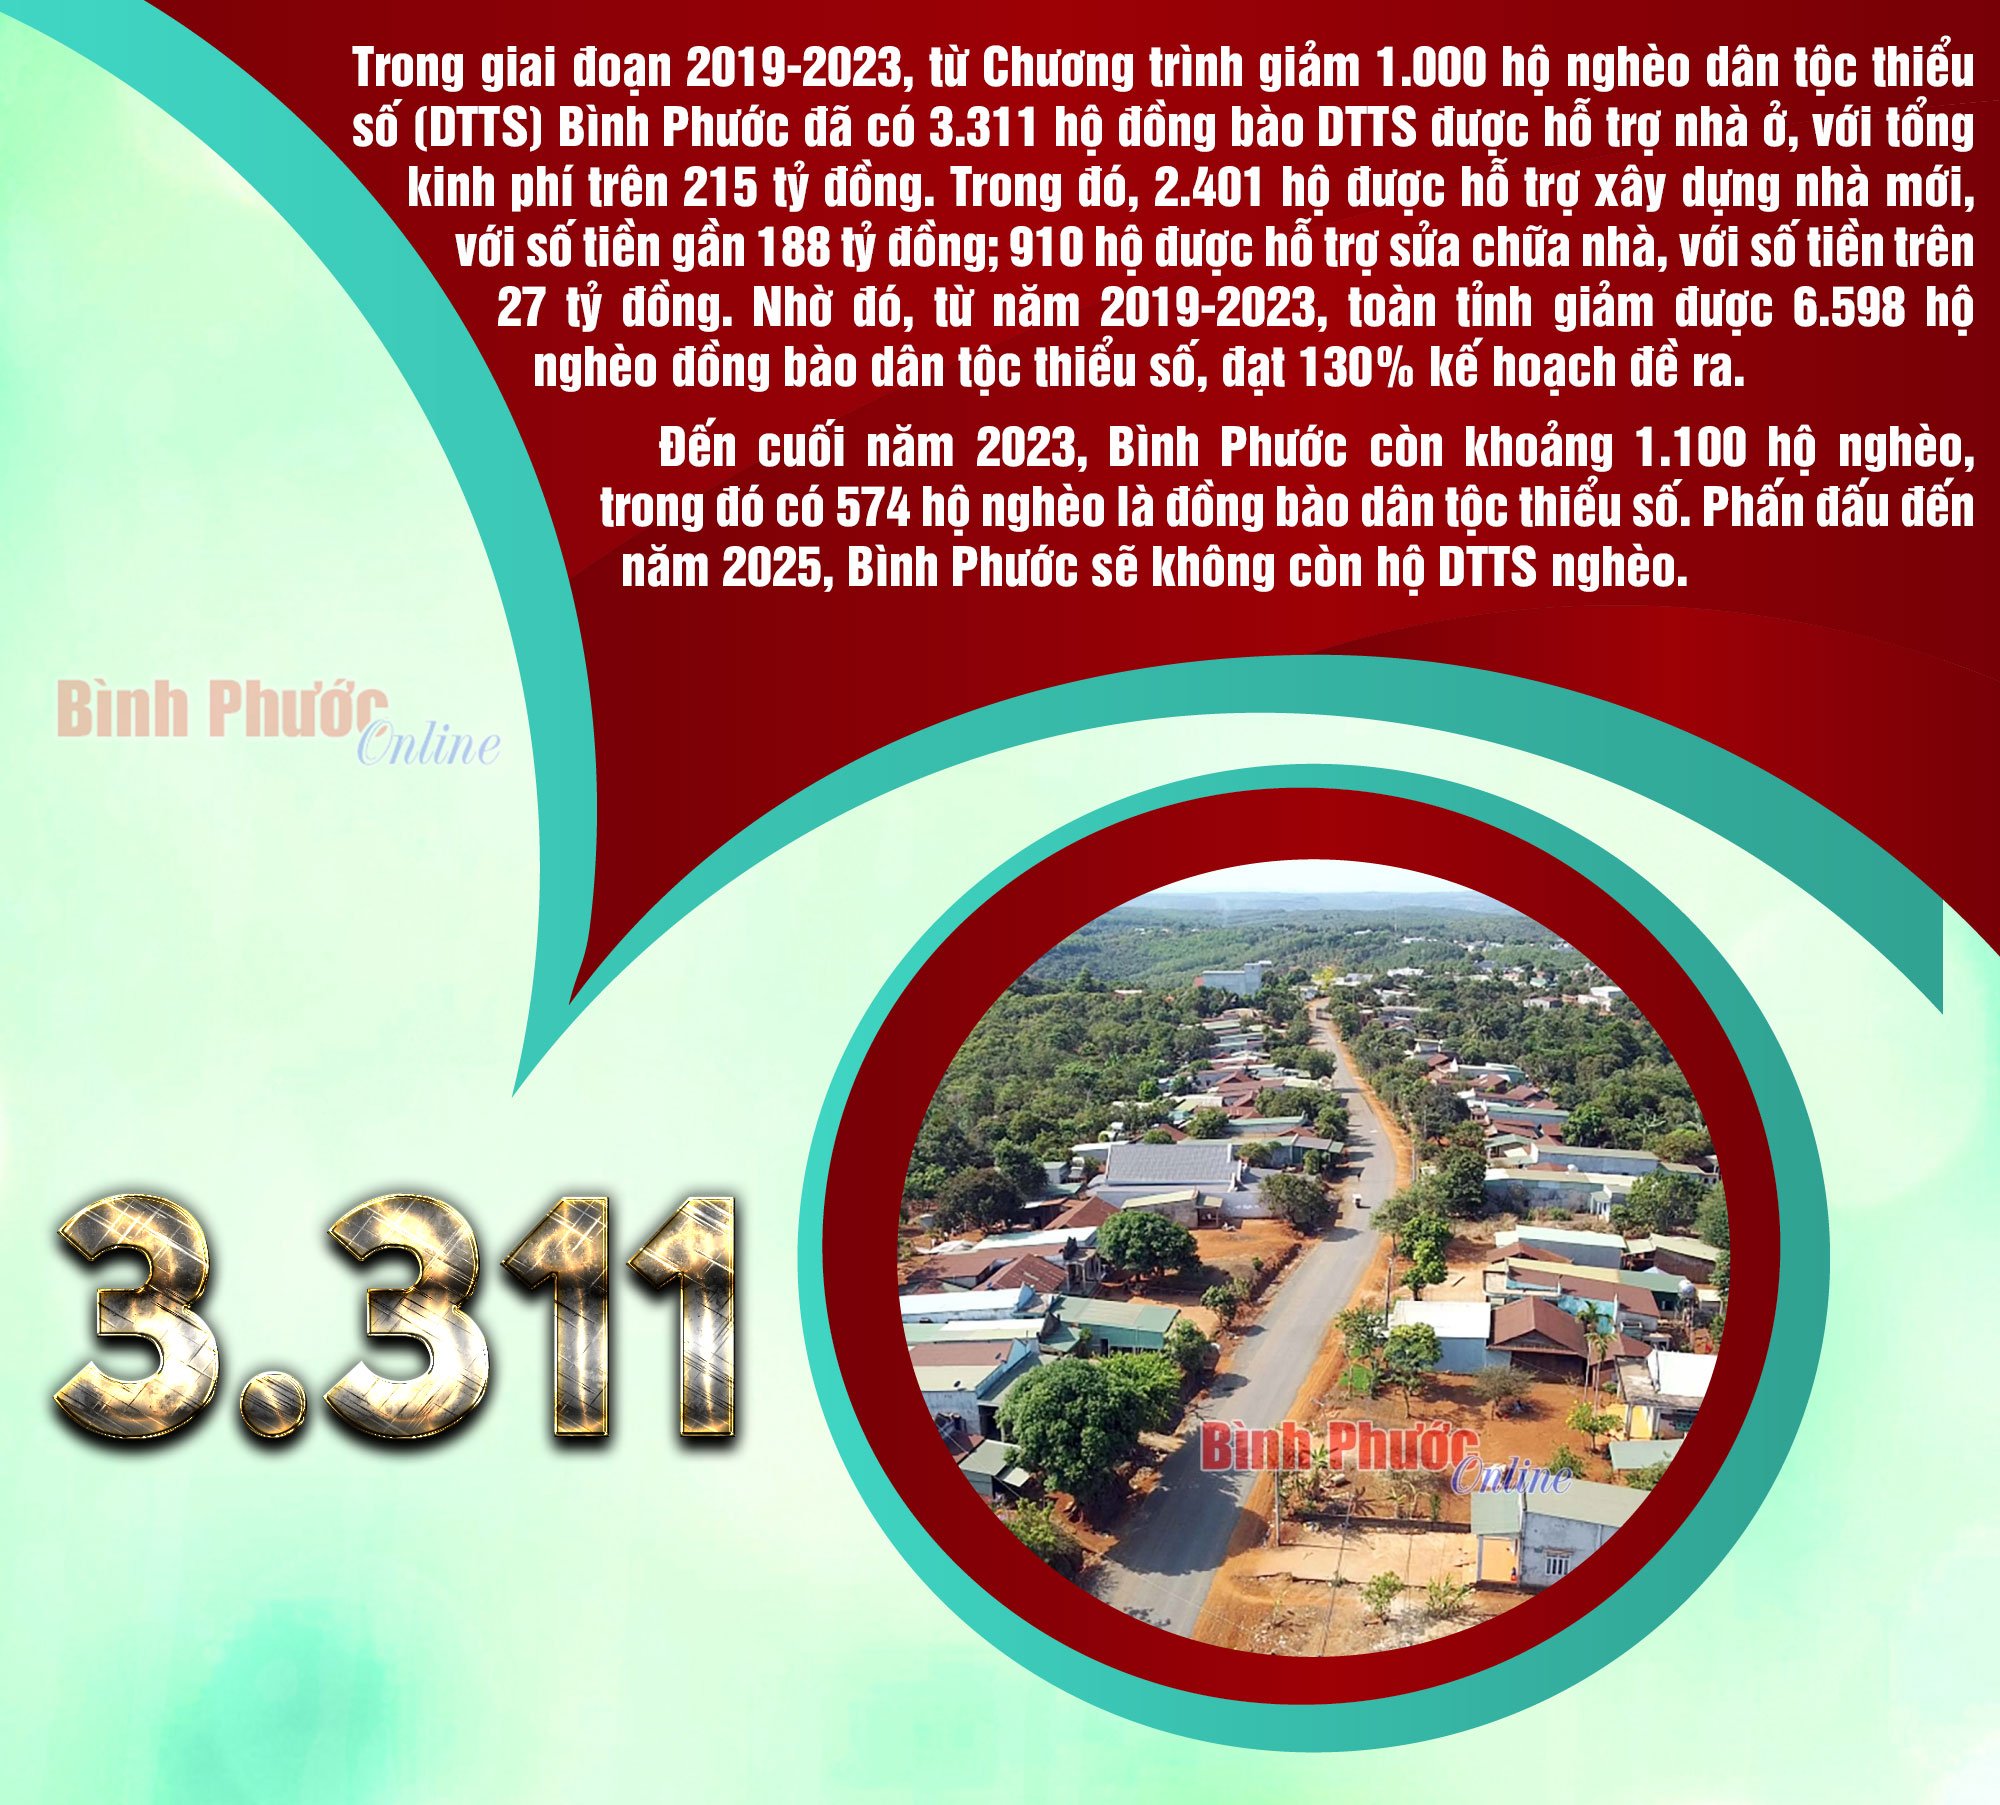 Giai đoạn 2019-2023, Bình Phước có 3.311 hộ đồng bào dân tộc thiểu số được hỗ trợ nhà ở